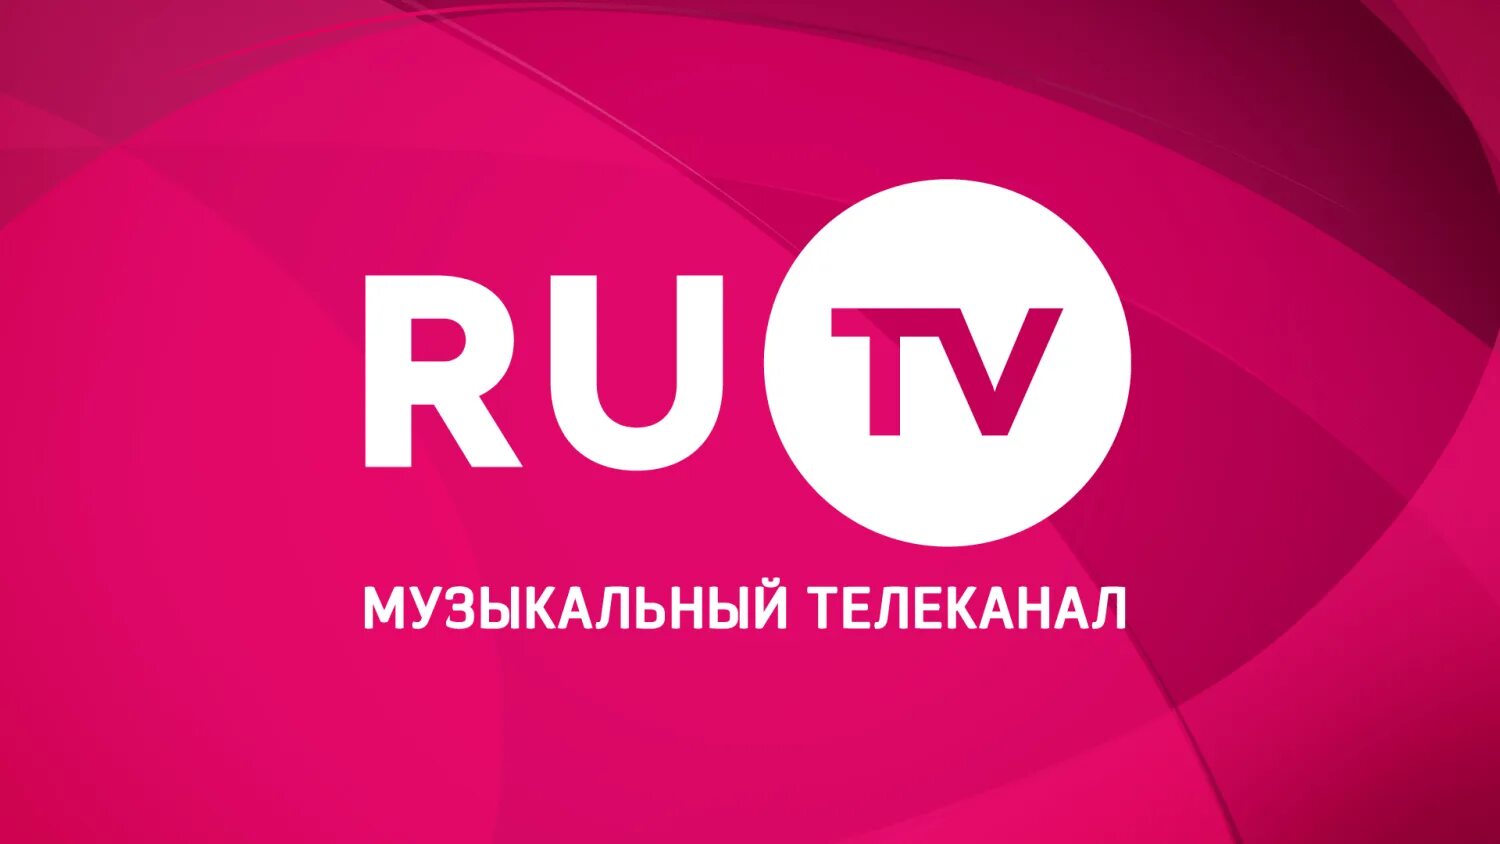 24tv ru. Ру ТВ. Ру ТВ логотип. Телеканал ru TV. Ру ТВ музыкальный канал.